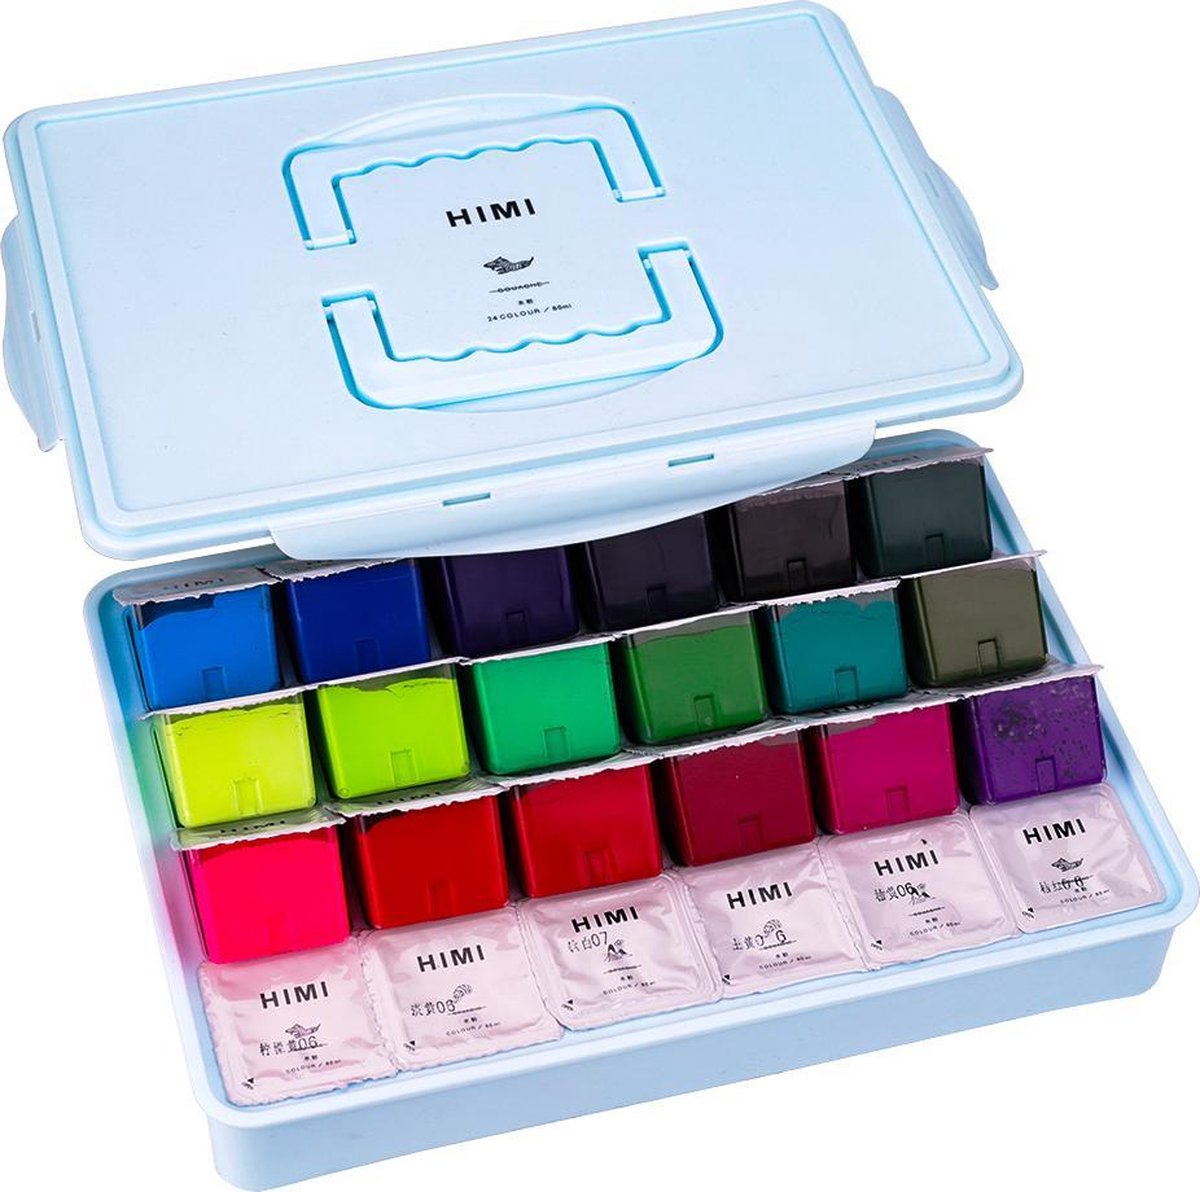 HIMI - Gouache - set van 24 kleuren x 80ml - in kunststof opbergbox blauw